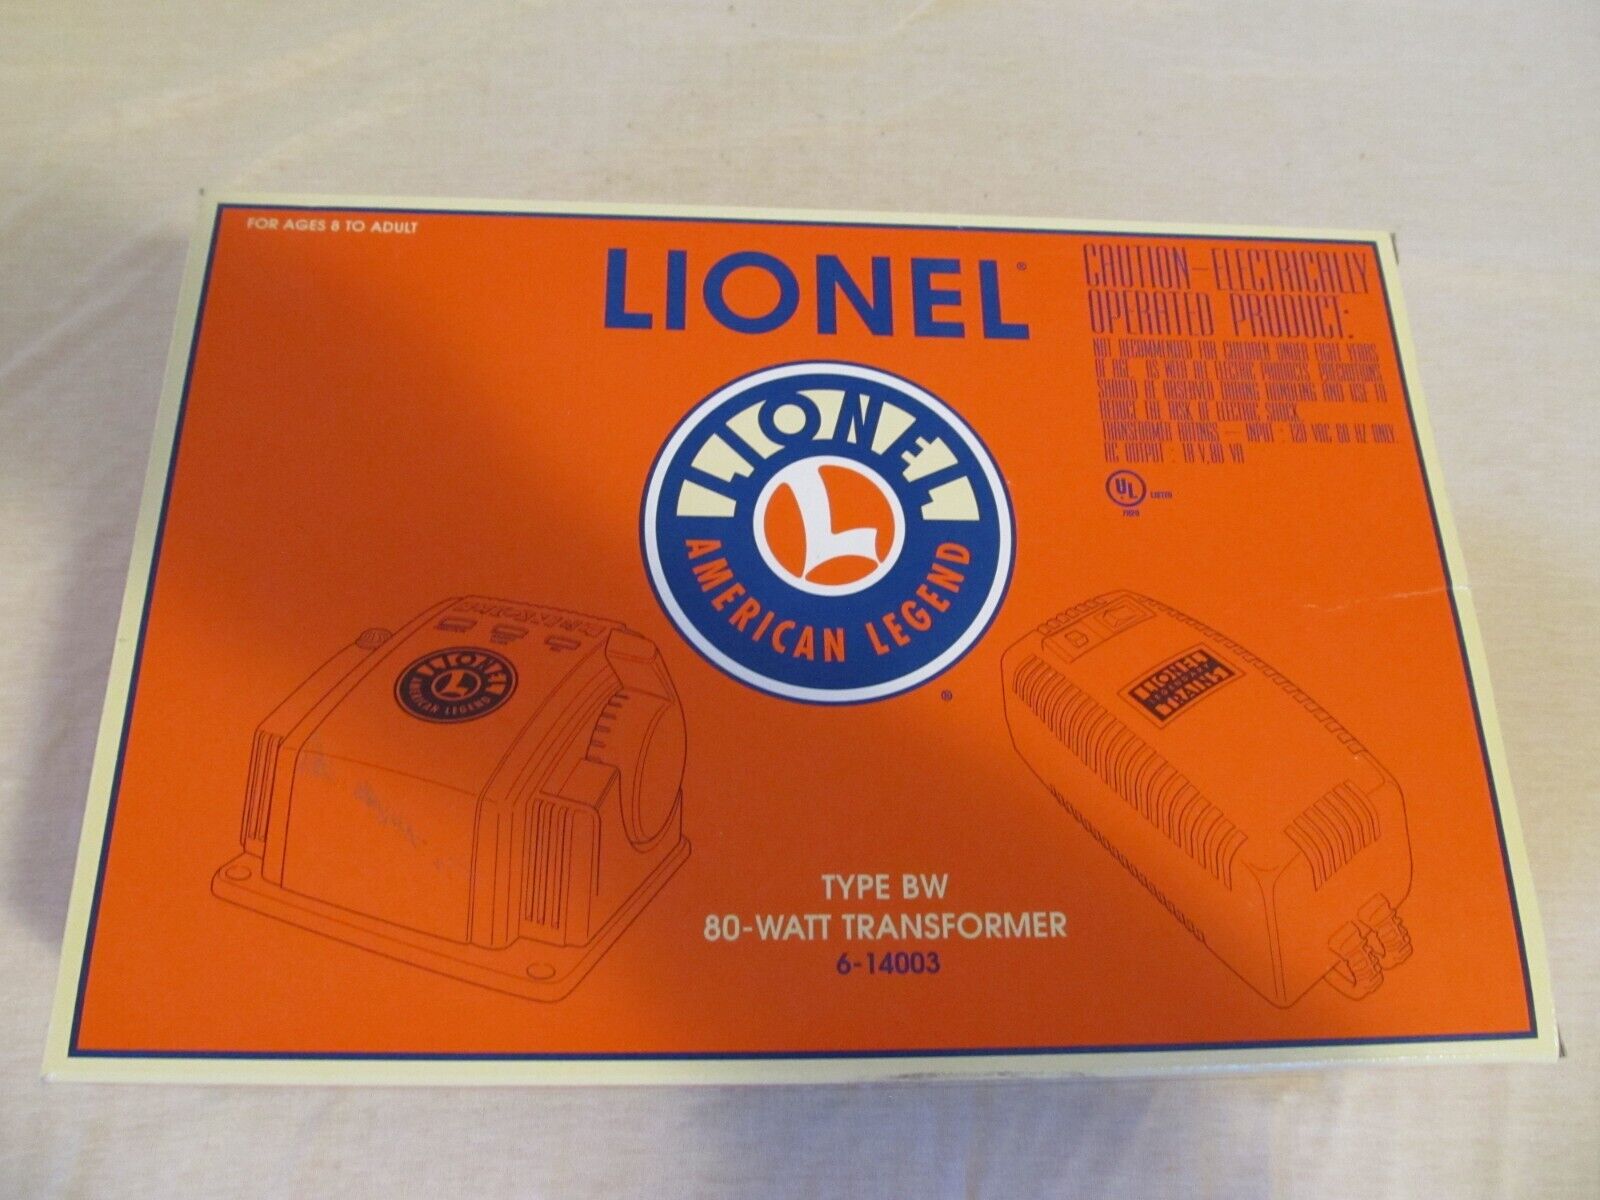 Lionel 80-watt Transformer  #6-14003